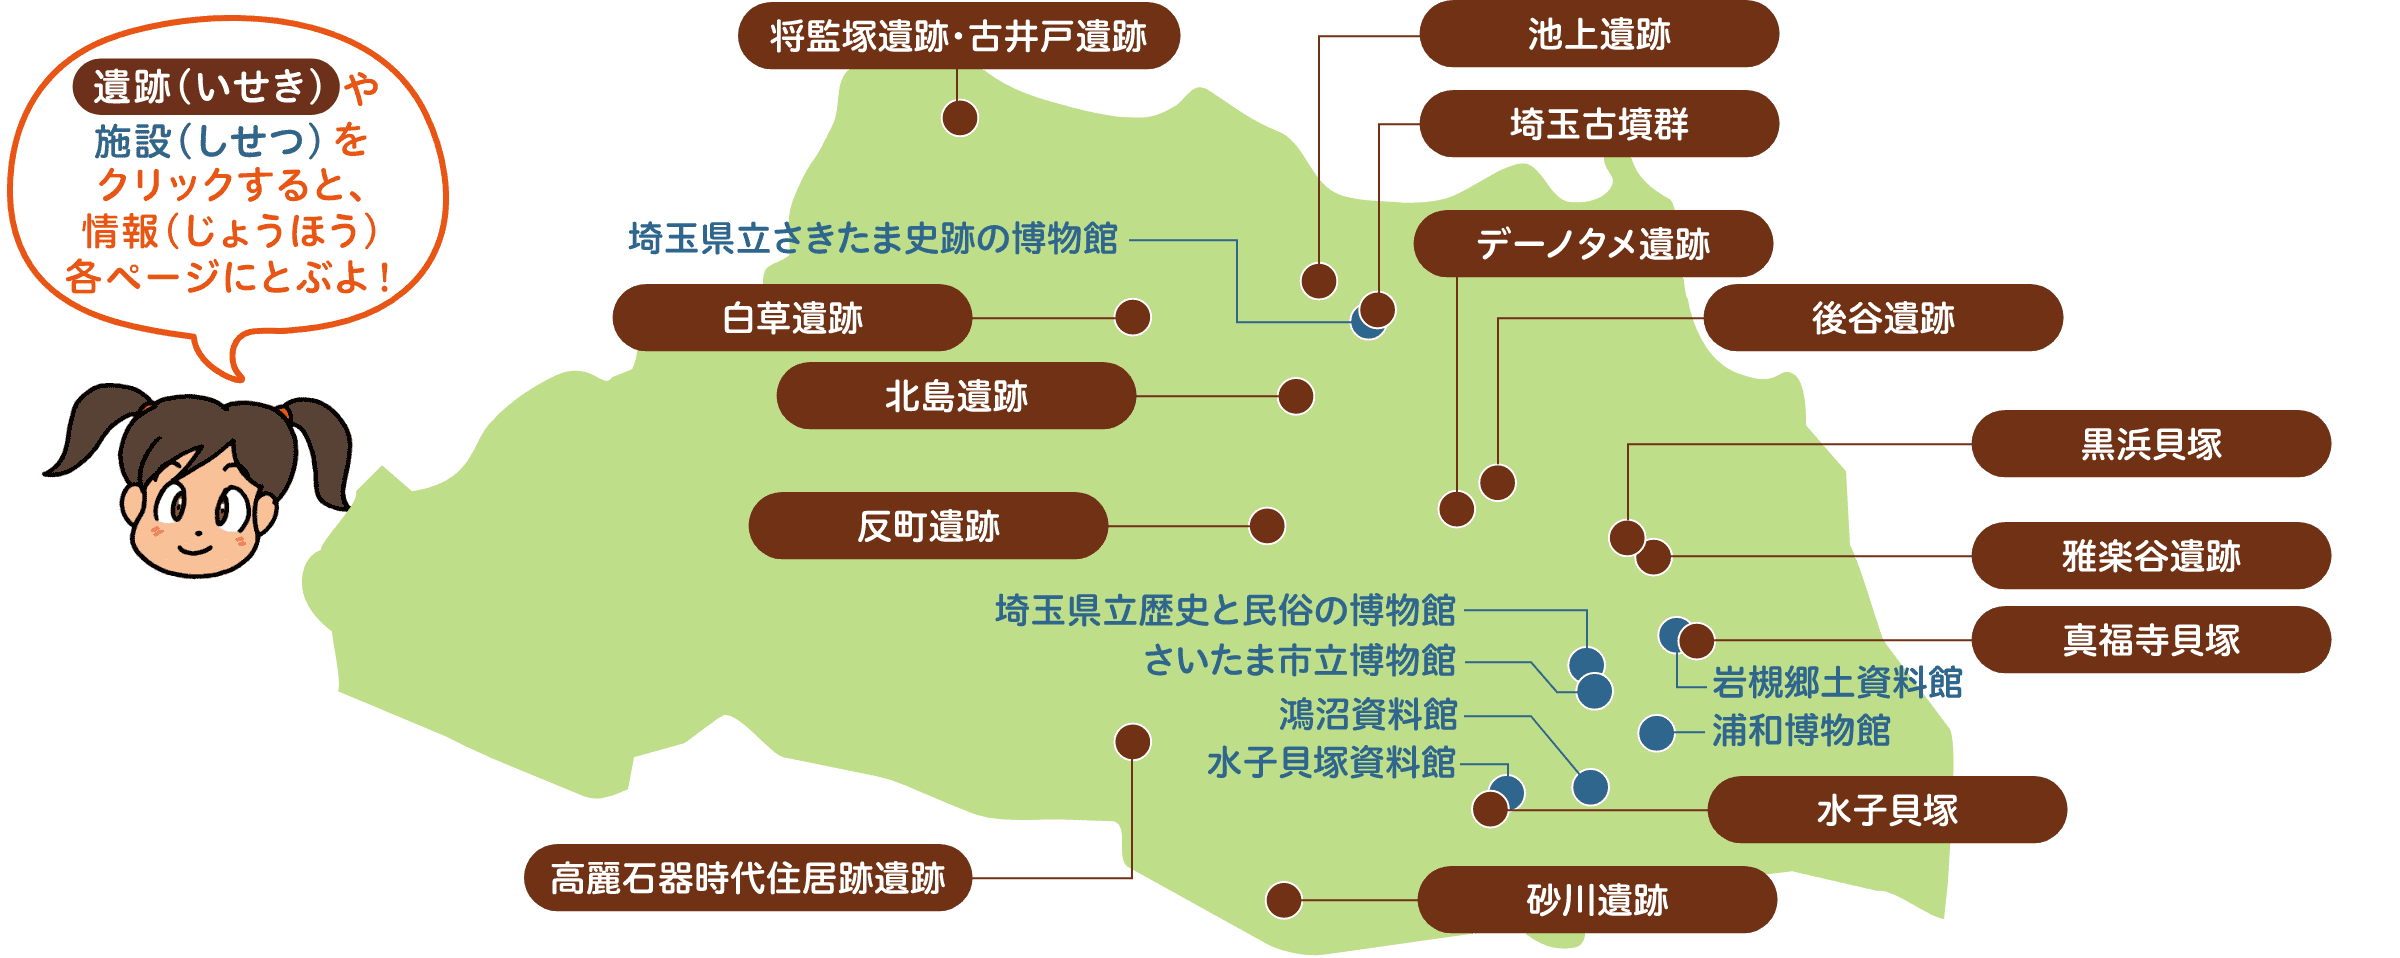 埼玉県のマップ